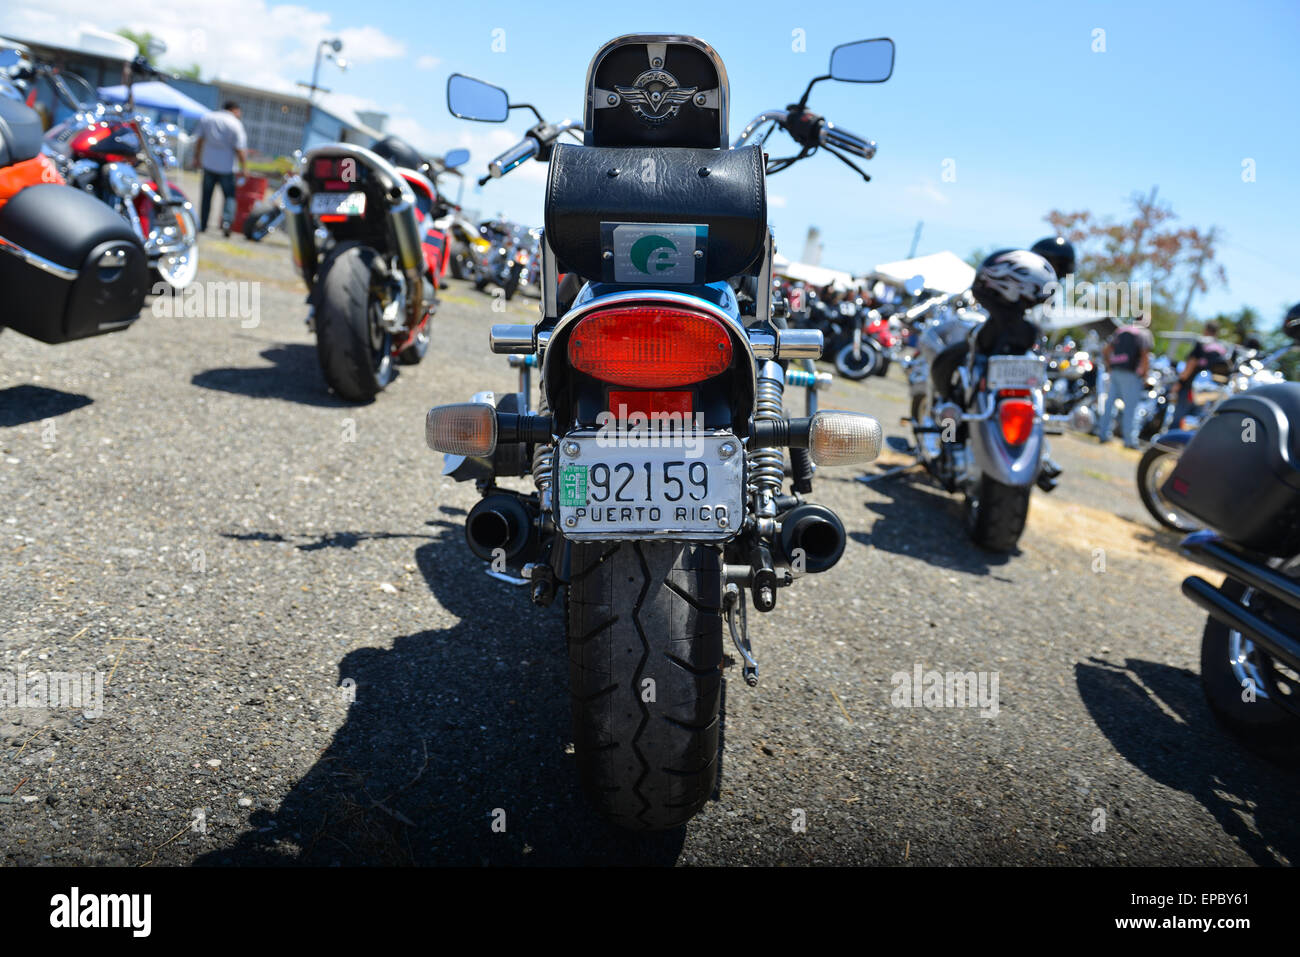 Numéro de la plaque d'une moto lors d'un événement cycliste à Ponce, Porto Rico. L'île des Caraïbes. USA territoire. Banque D'Images